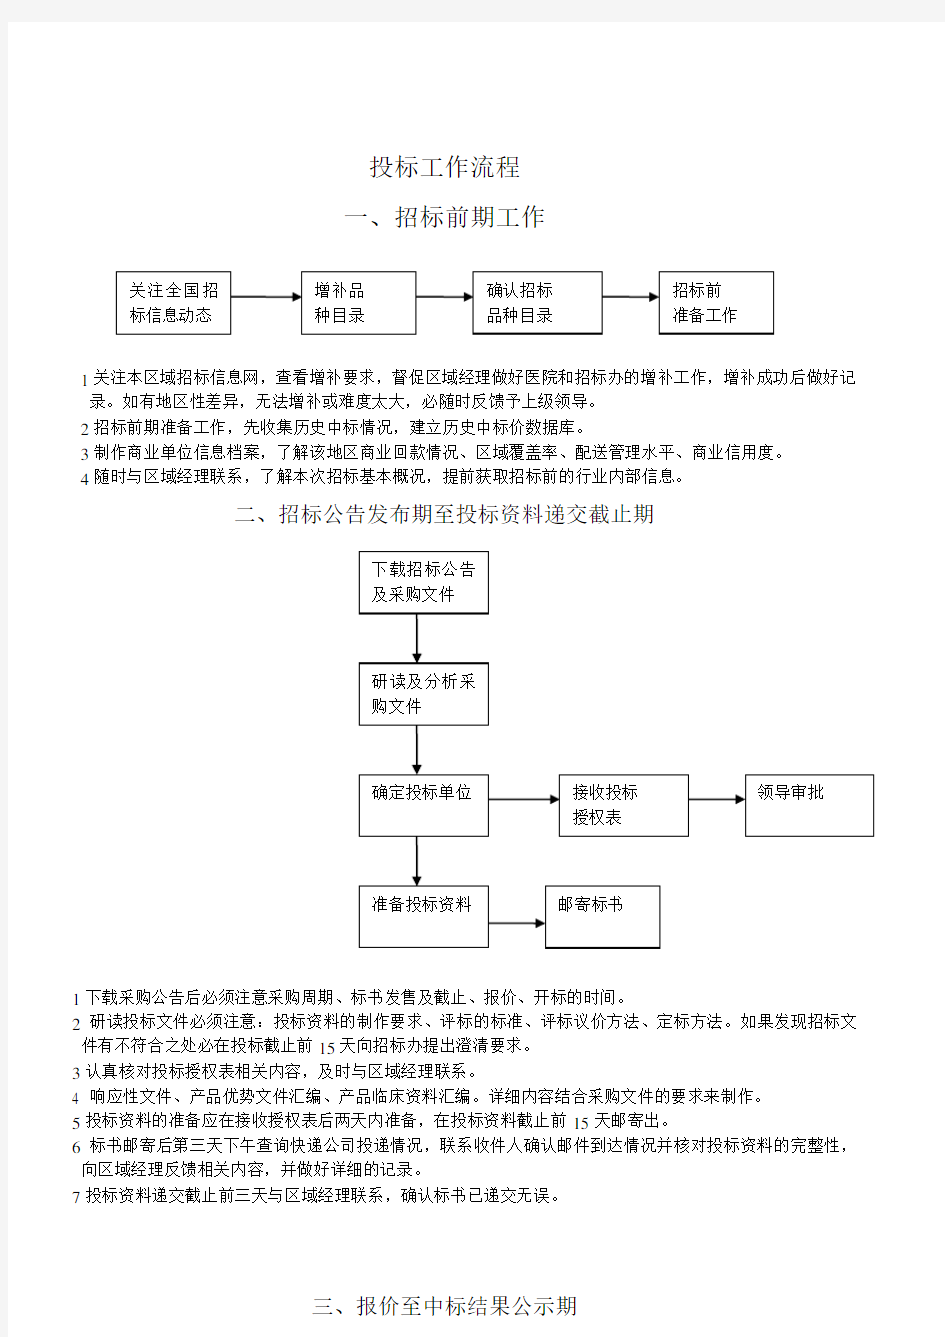 招投标挂网流程图(新)